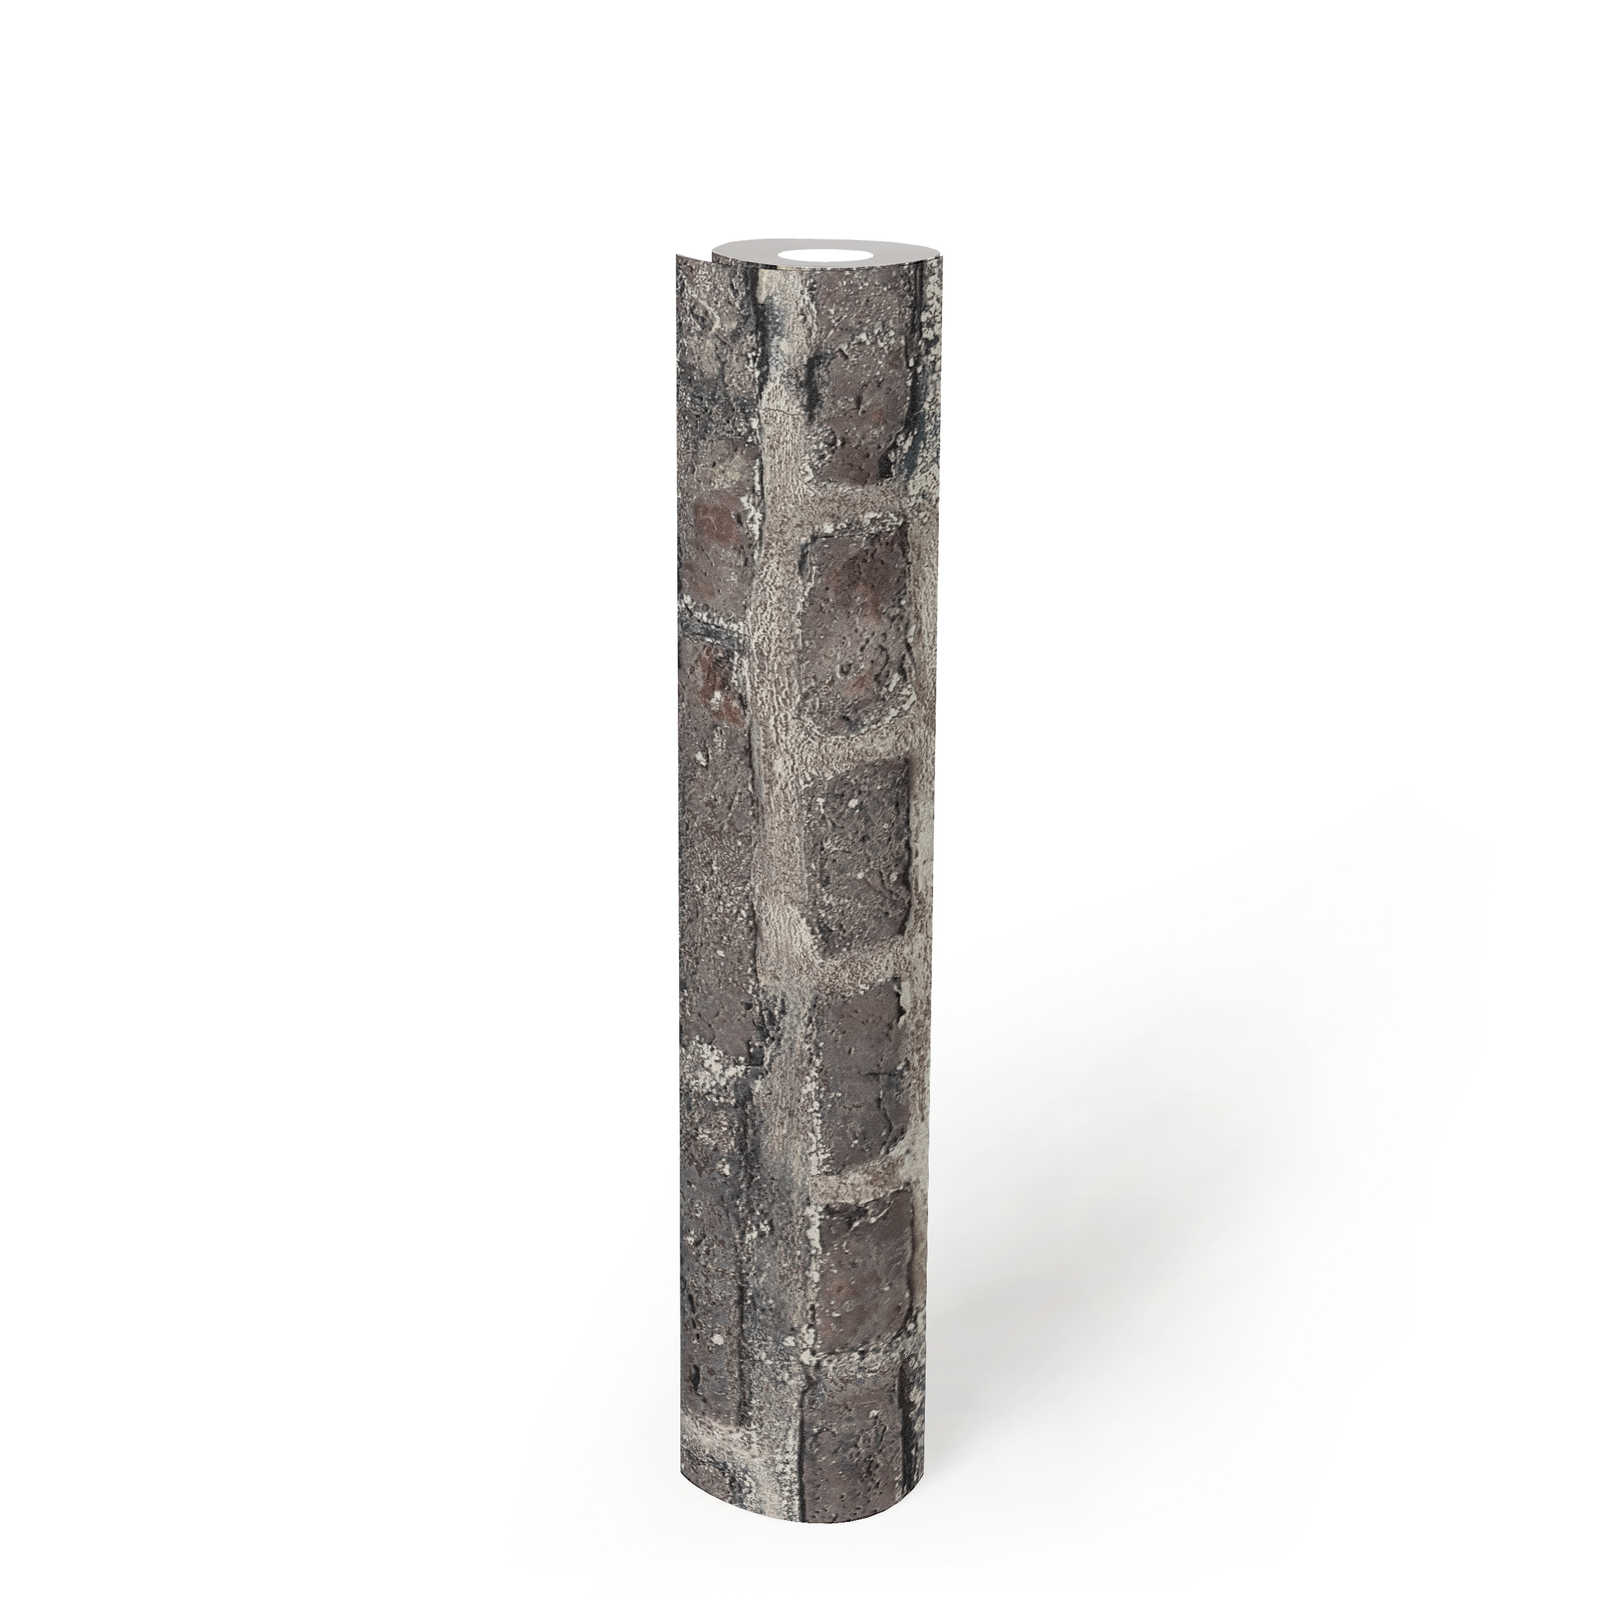             Papel pintado de aspecto de piedra con ladrillos, ladrillo - gris, negro
        